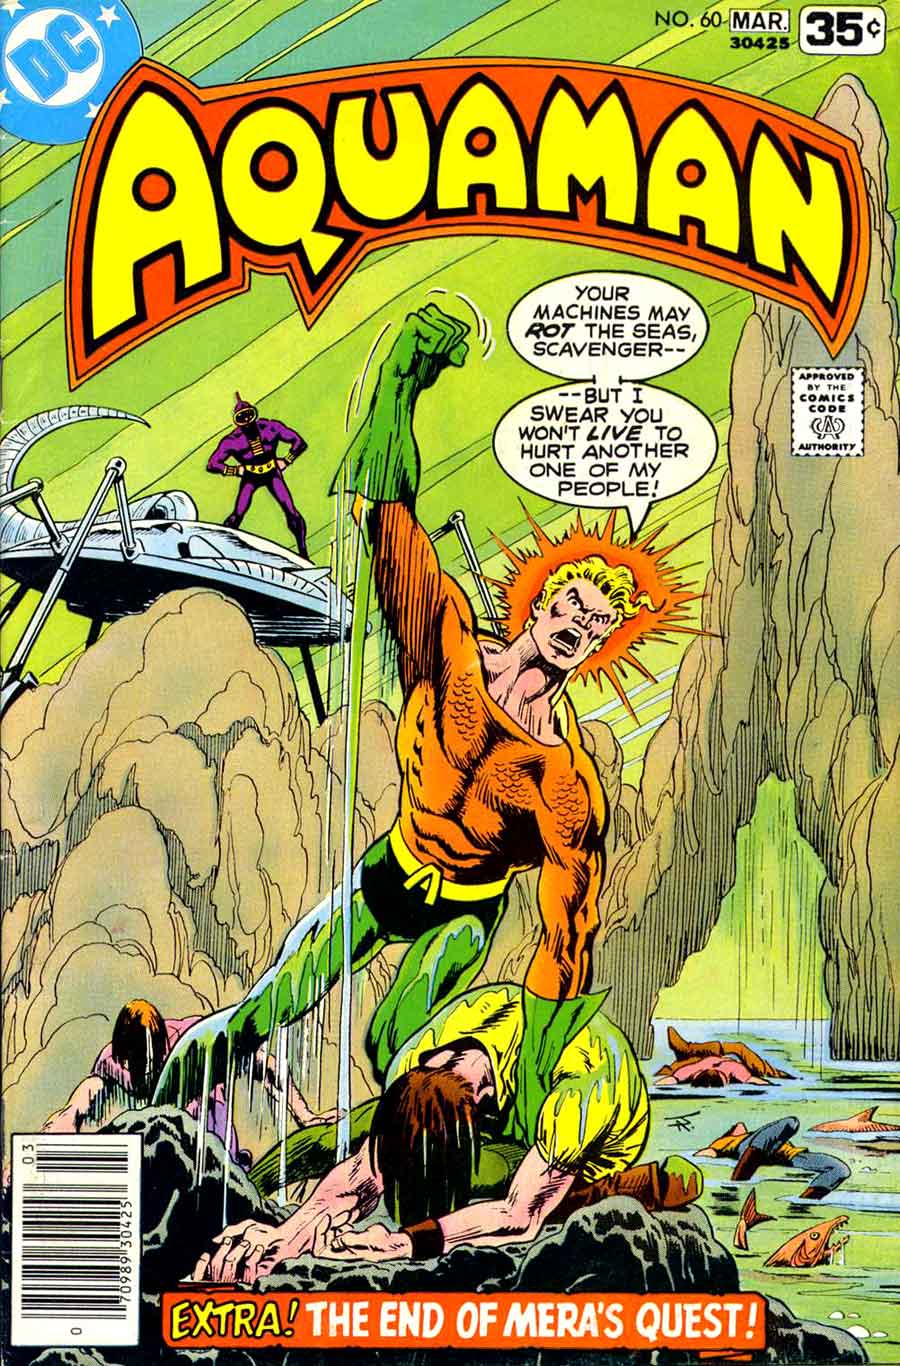 Aquaman v1 #60 dc 1970s bronze age comic book cover art